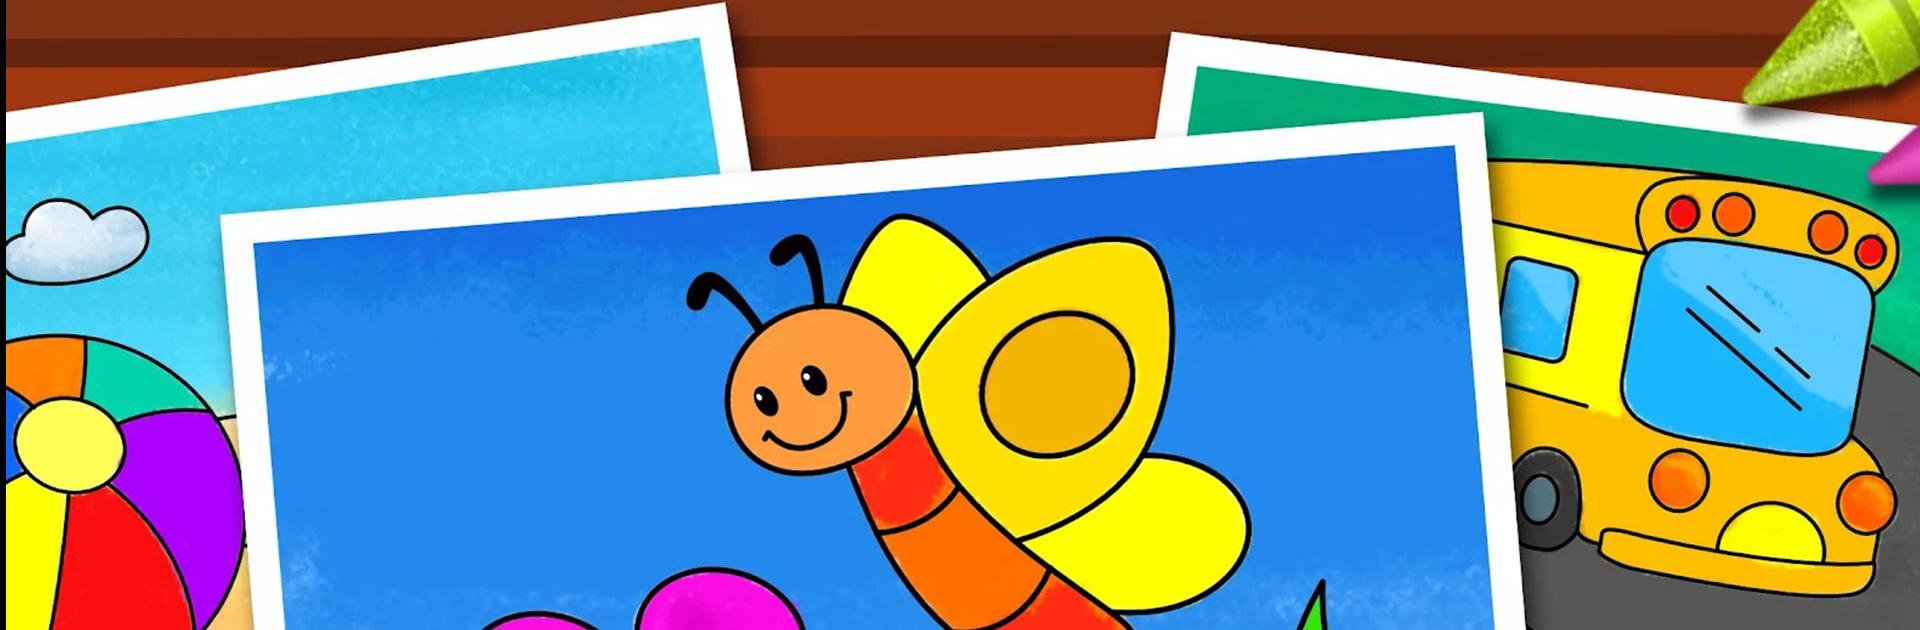 Obter Jogos de Colorir: Coloração, Pintura e Brilho - Microsoft Store pt-MZ